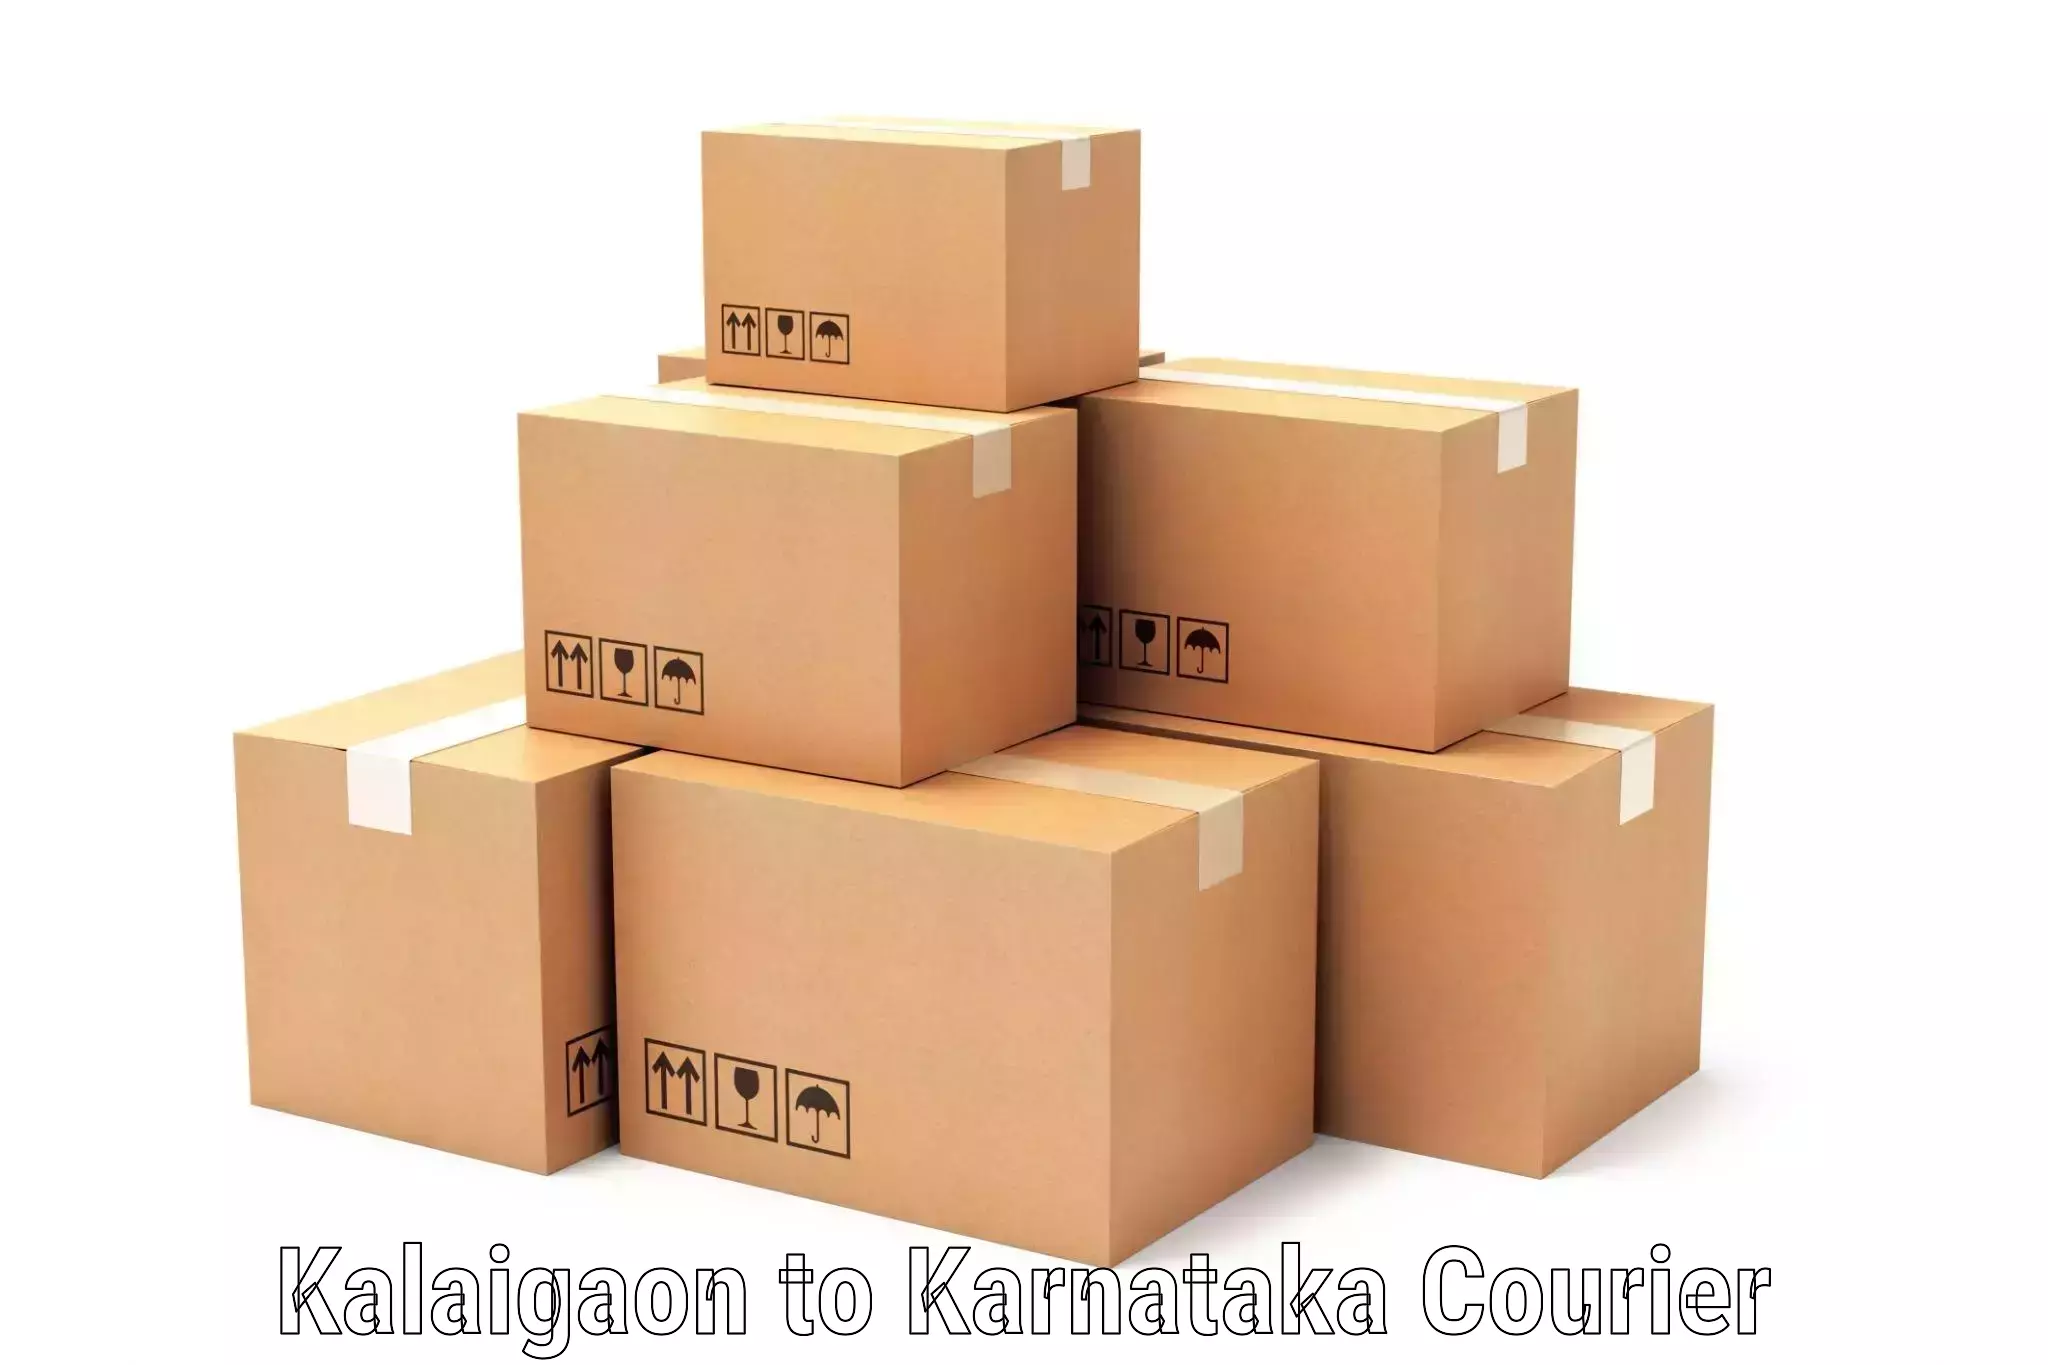 Streamlined shipping process Kalaigaon to Karnataka